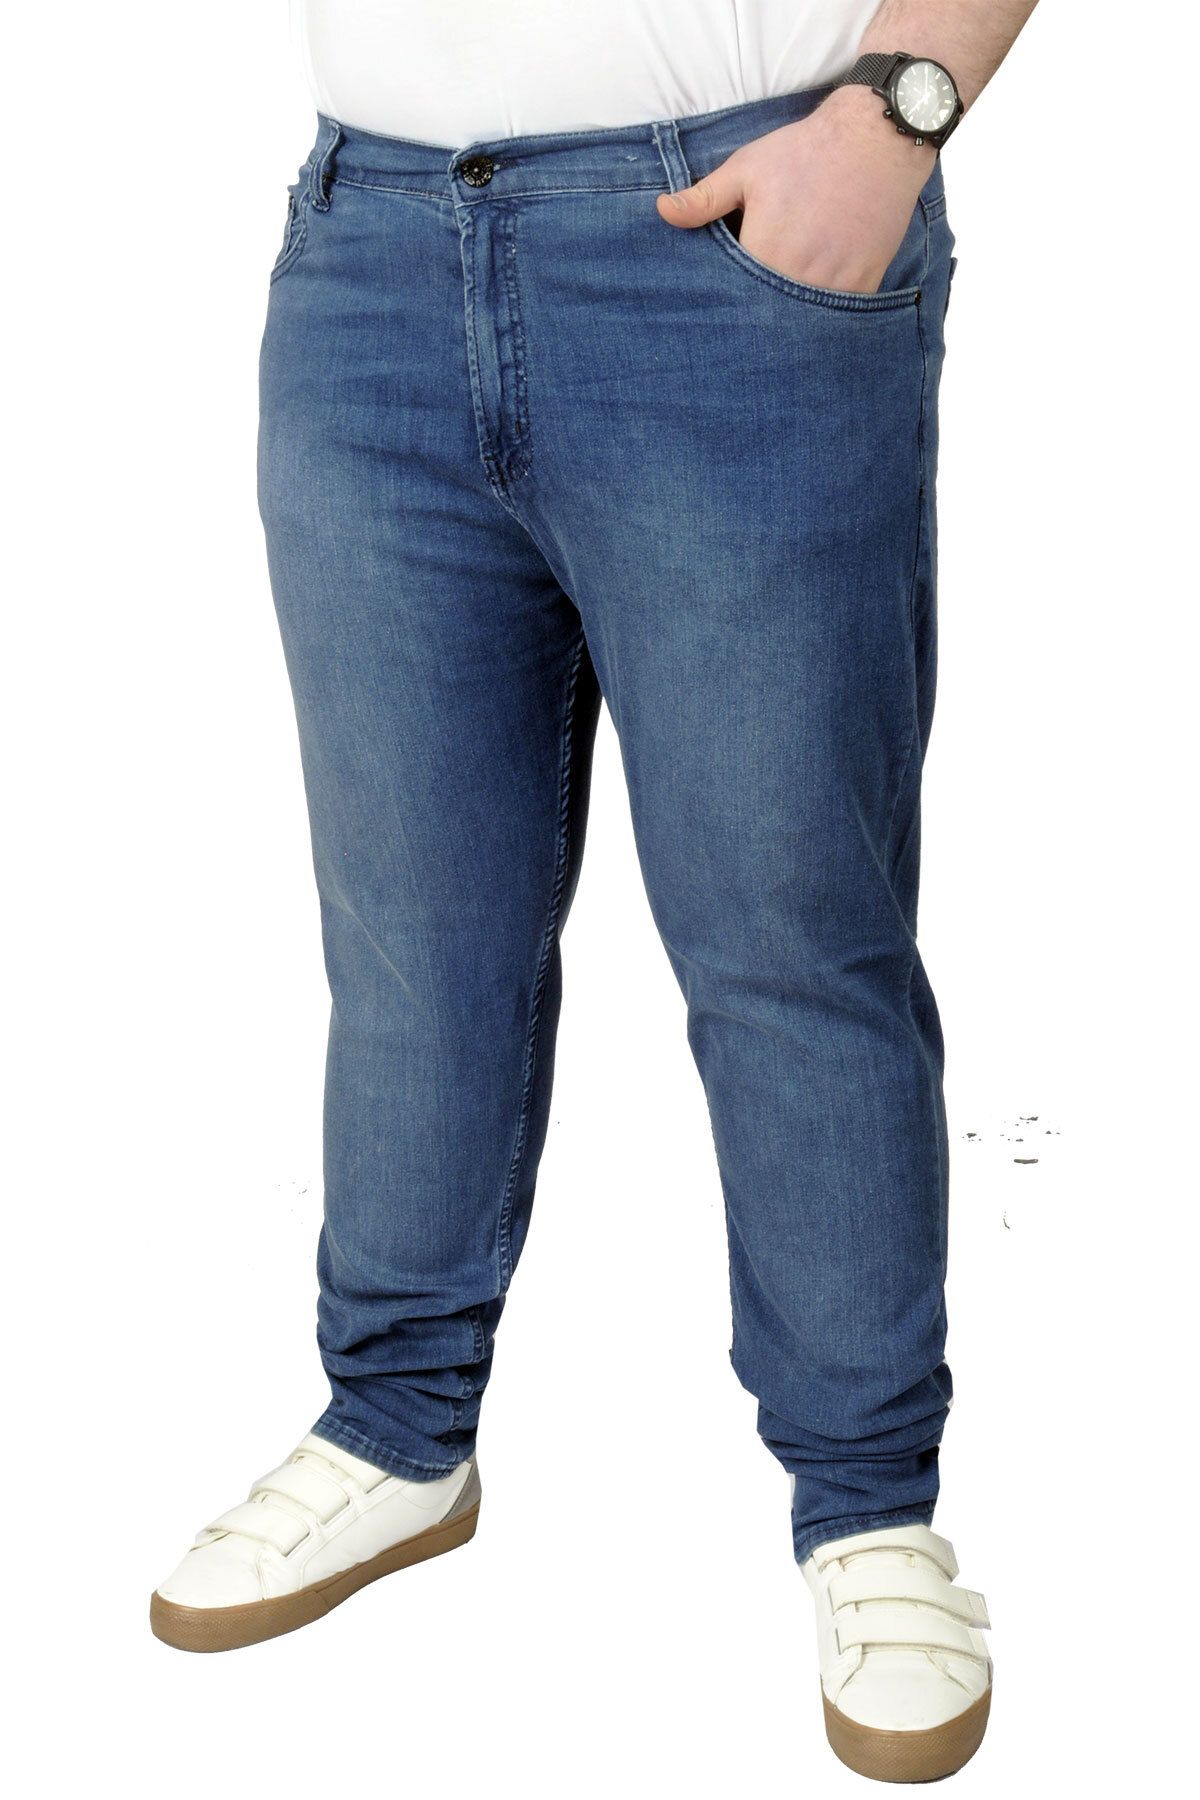 Modexl Mode Xl Büyük Beden Erkek Pantolon Kot 21920 Mavi